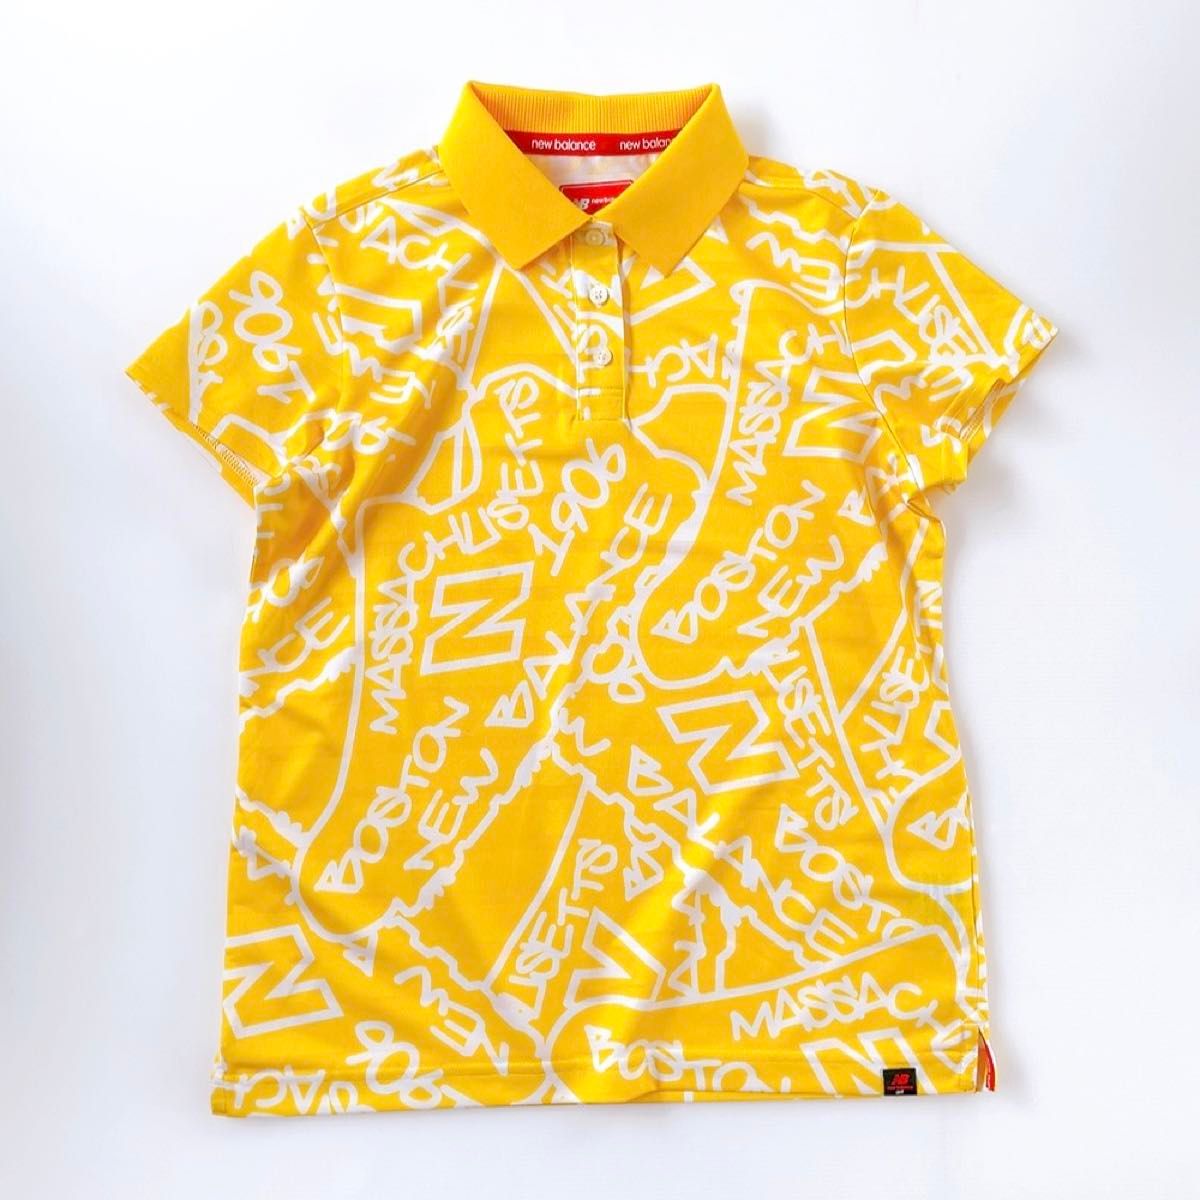 ゴルフウェア 上下 セットアップ L 2 レディース ニューバランスゴルフ カッパ 半袖 黄色 水色 総柄 ロゴ 春夏 シャツ